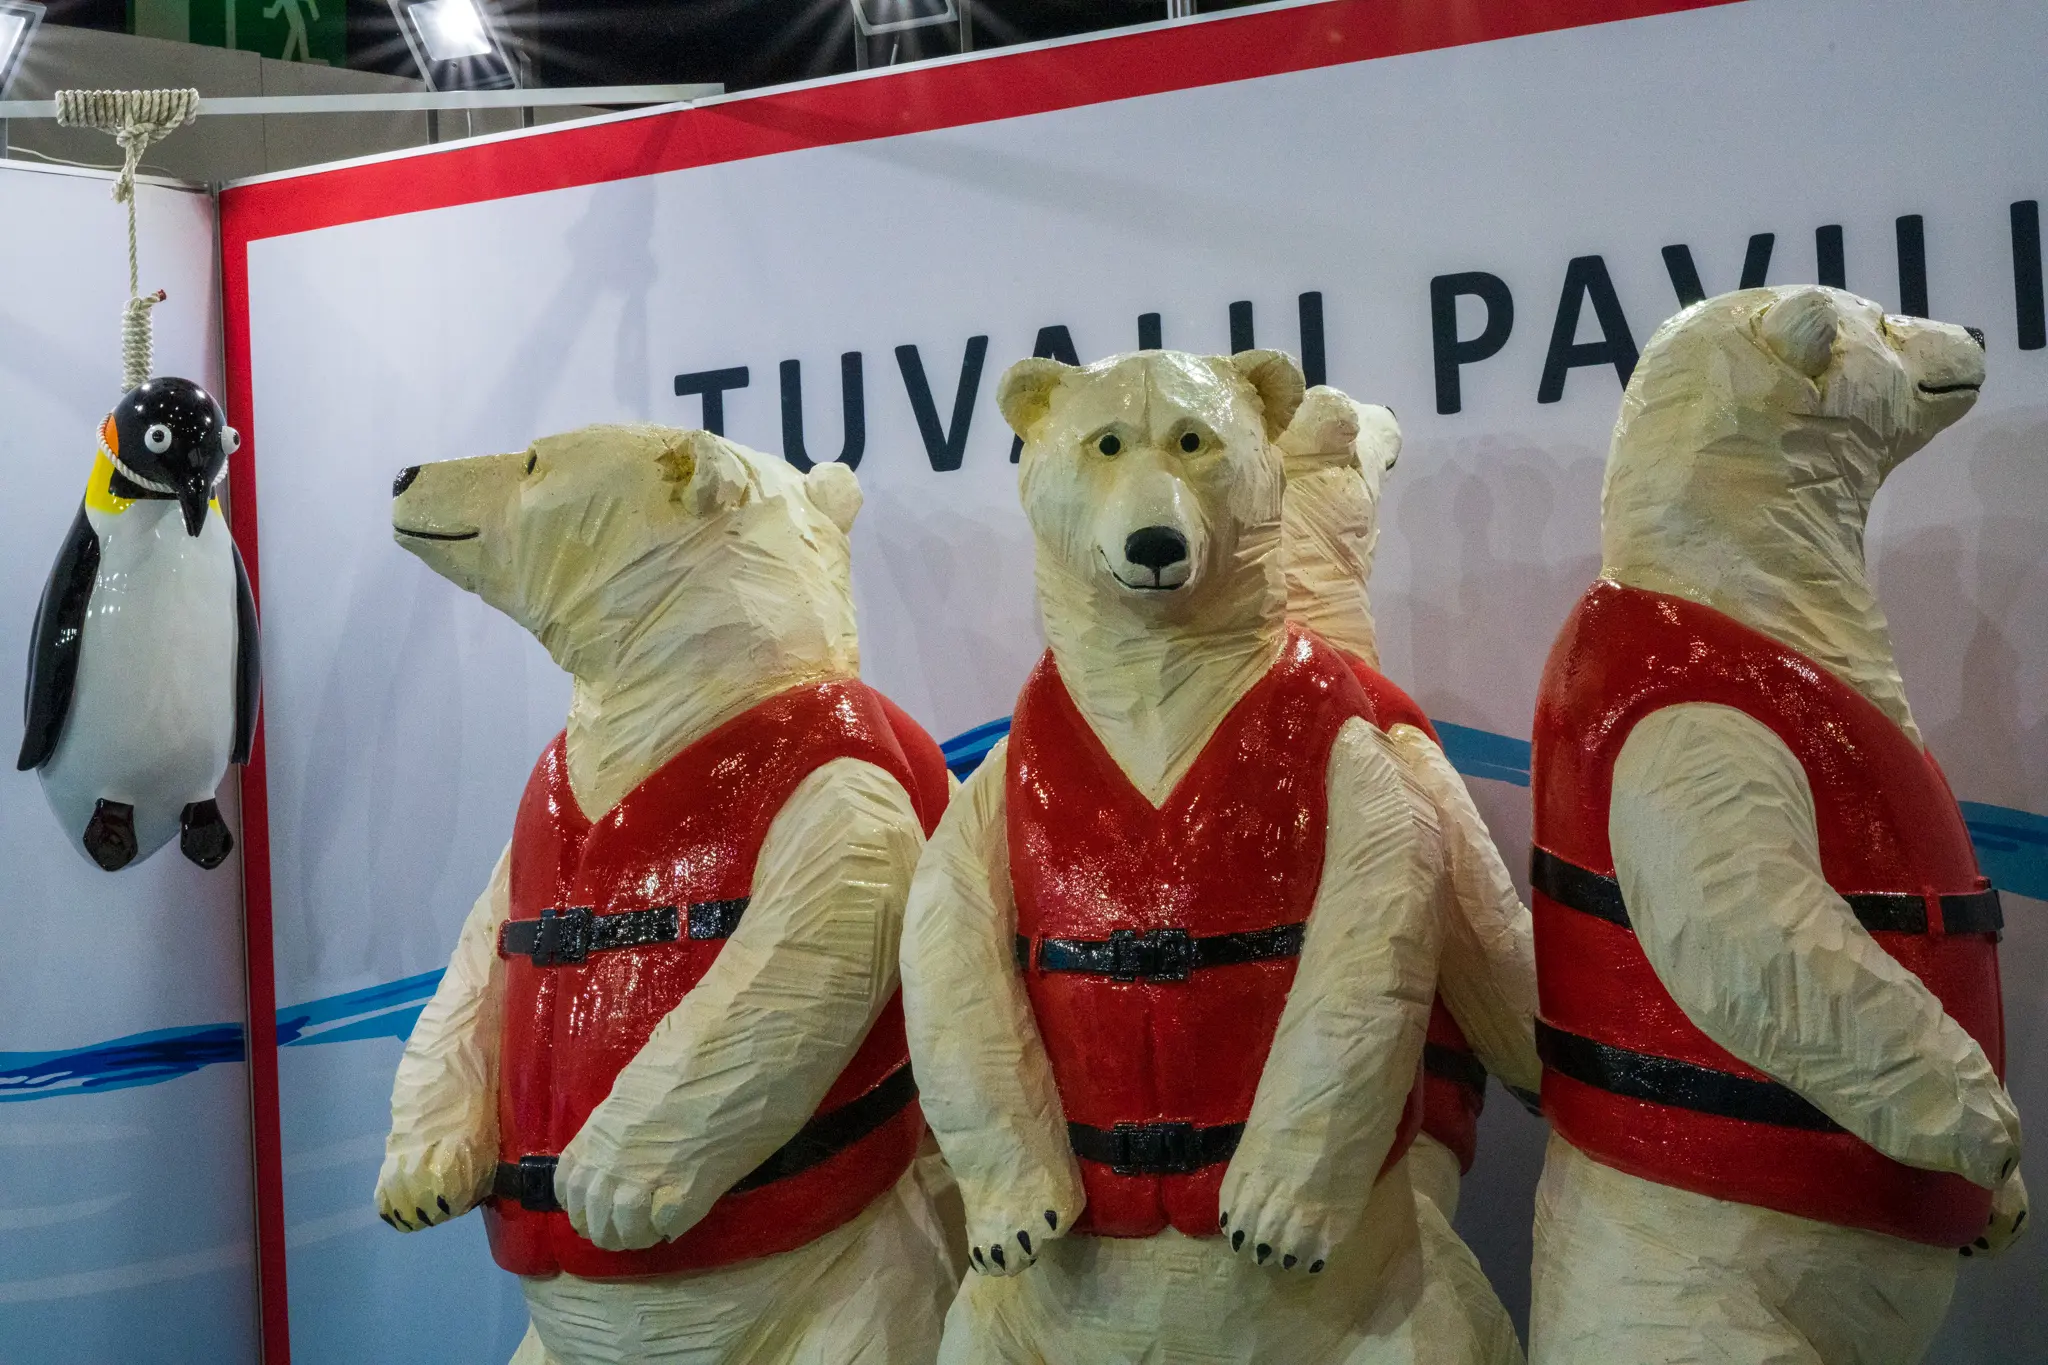 Polar bear art; polar bears in life jackets